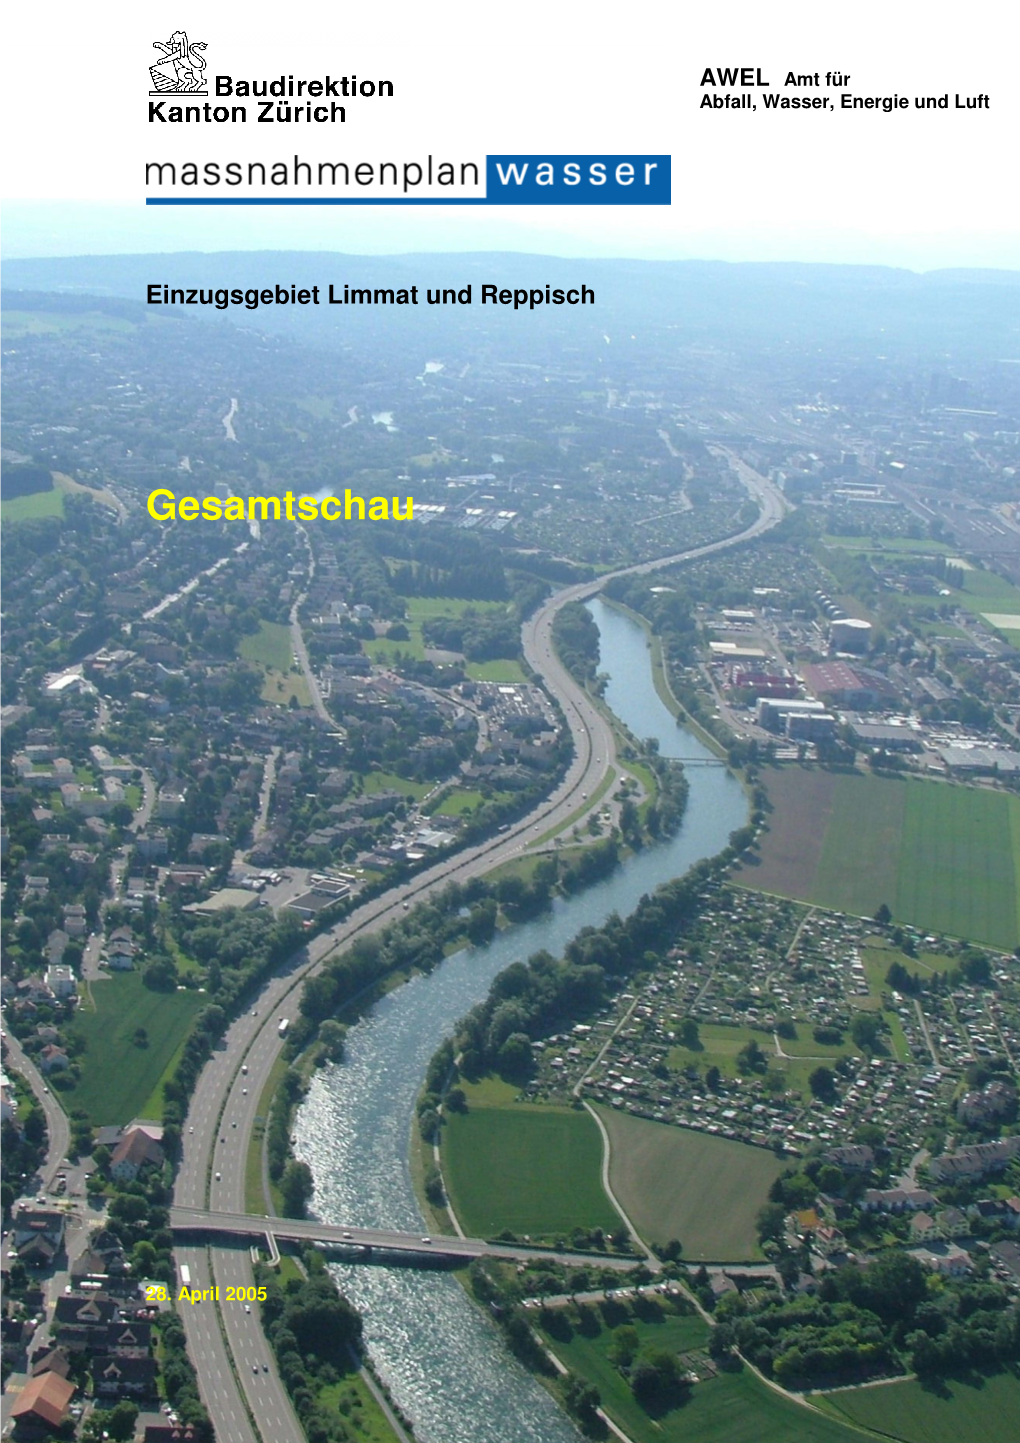 Gesamtschau / Kurzfassung – Einzugsgebiet Limmat Und Reppisch, AWEL 2005